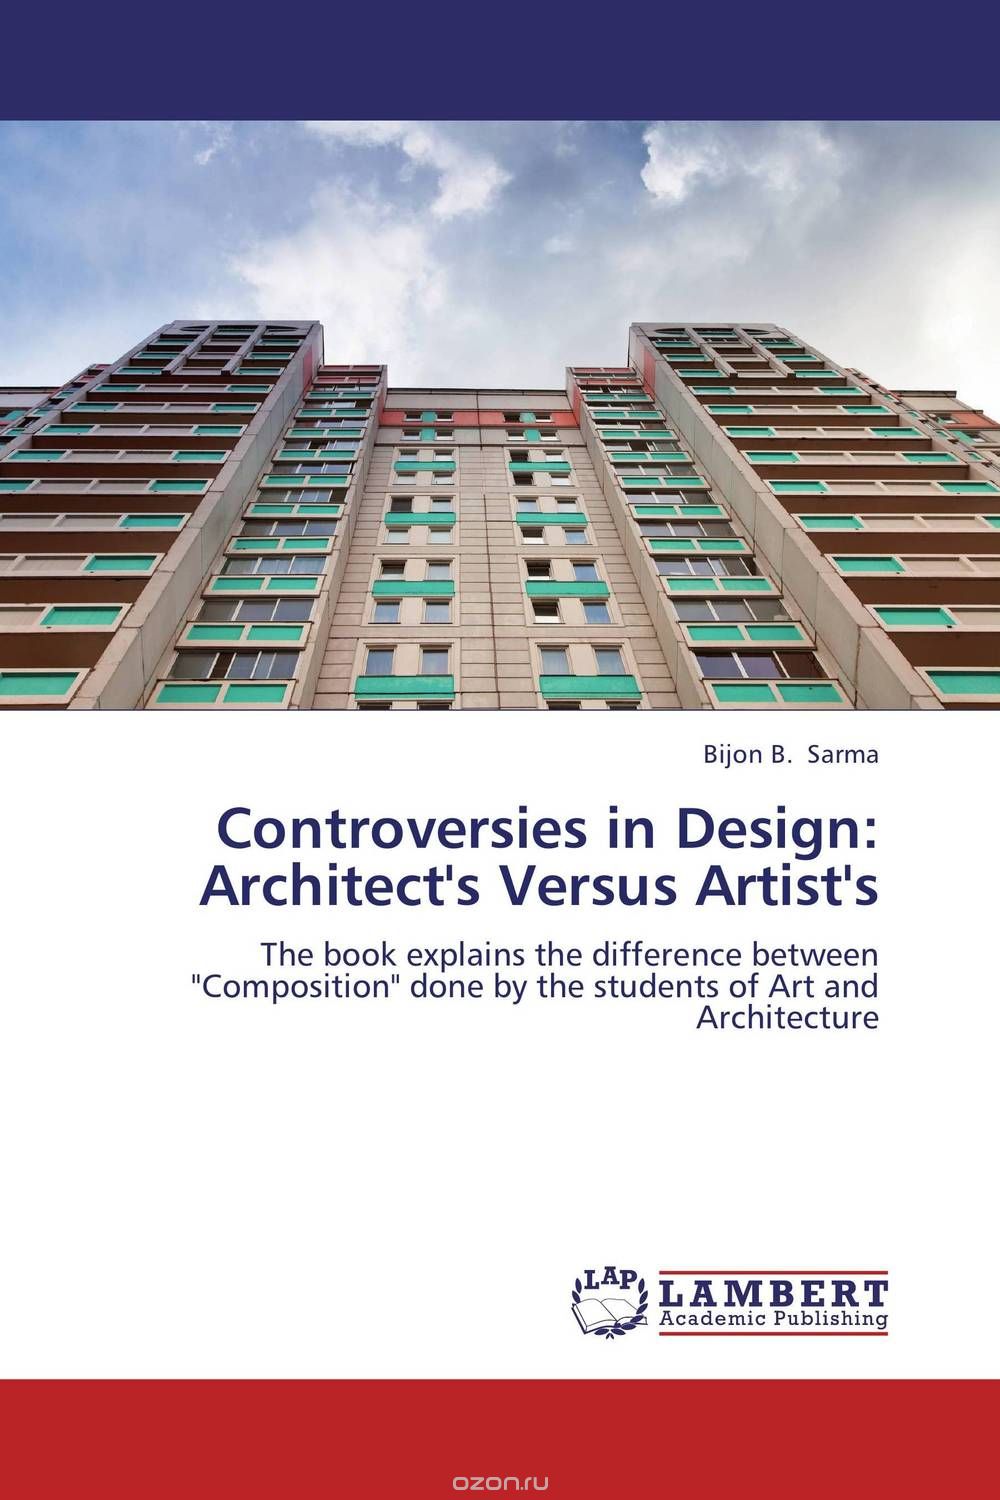 Controversies in Design: Architect's Versus Artist's